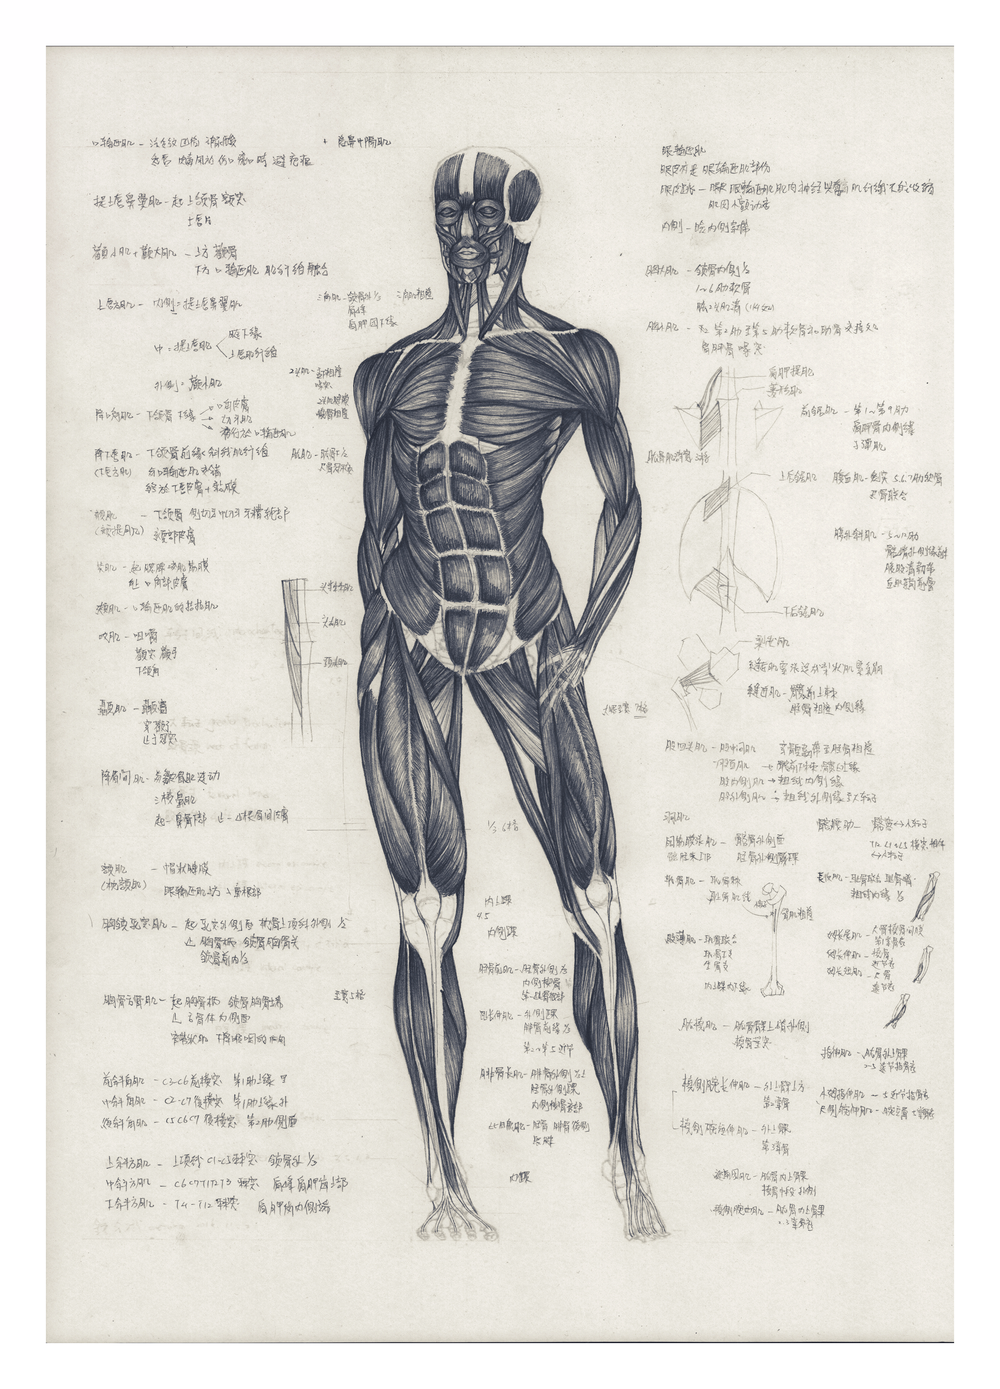 藝用解剖學1 達文西維特魯威人 線上教學課程 Hahow 好學校